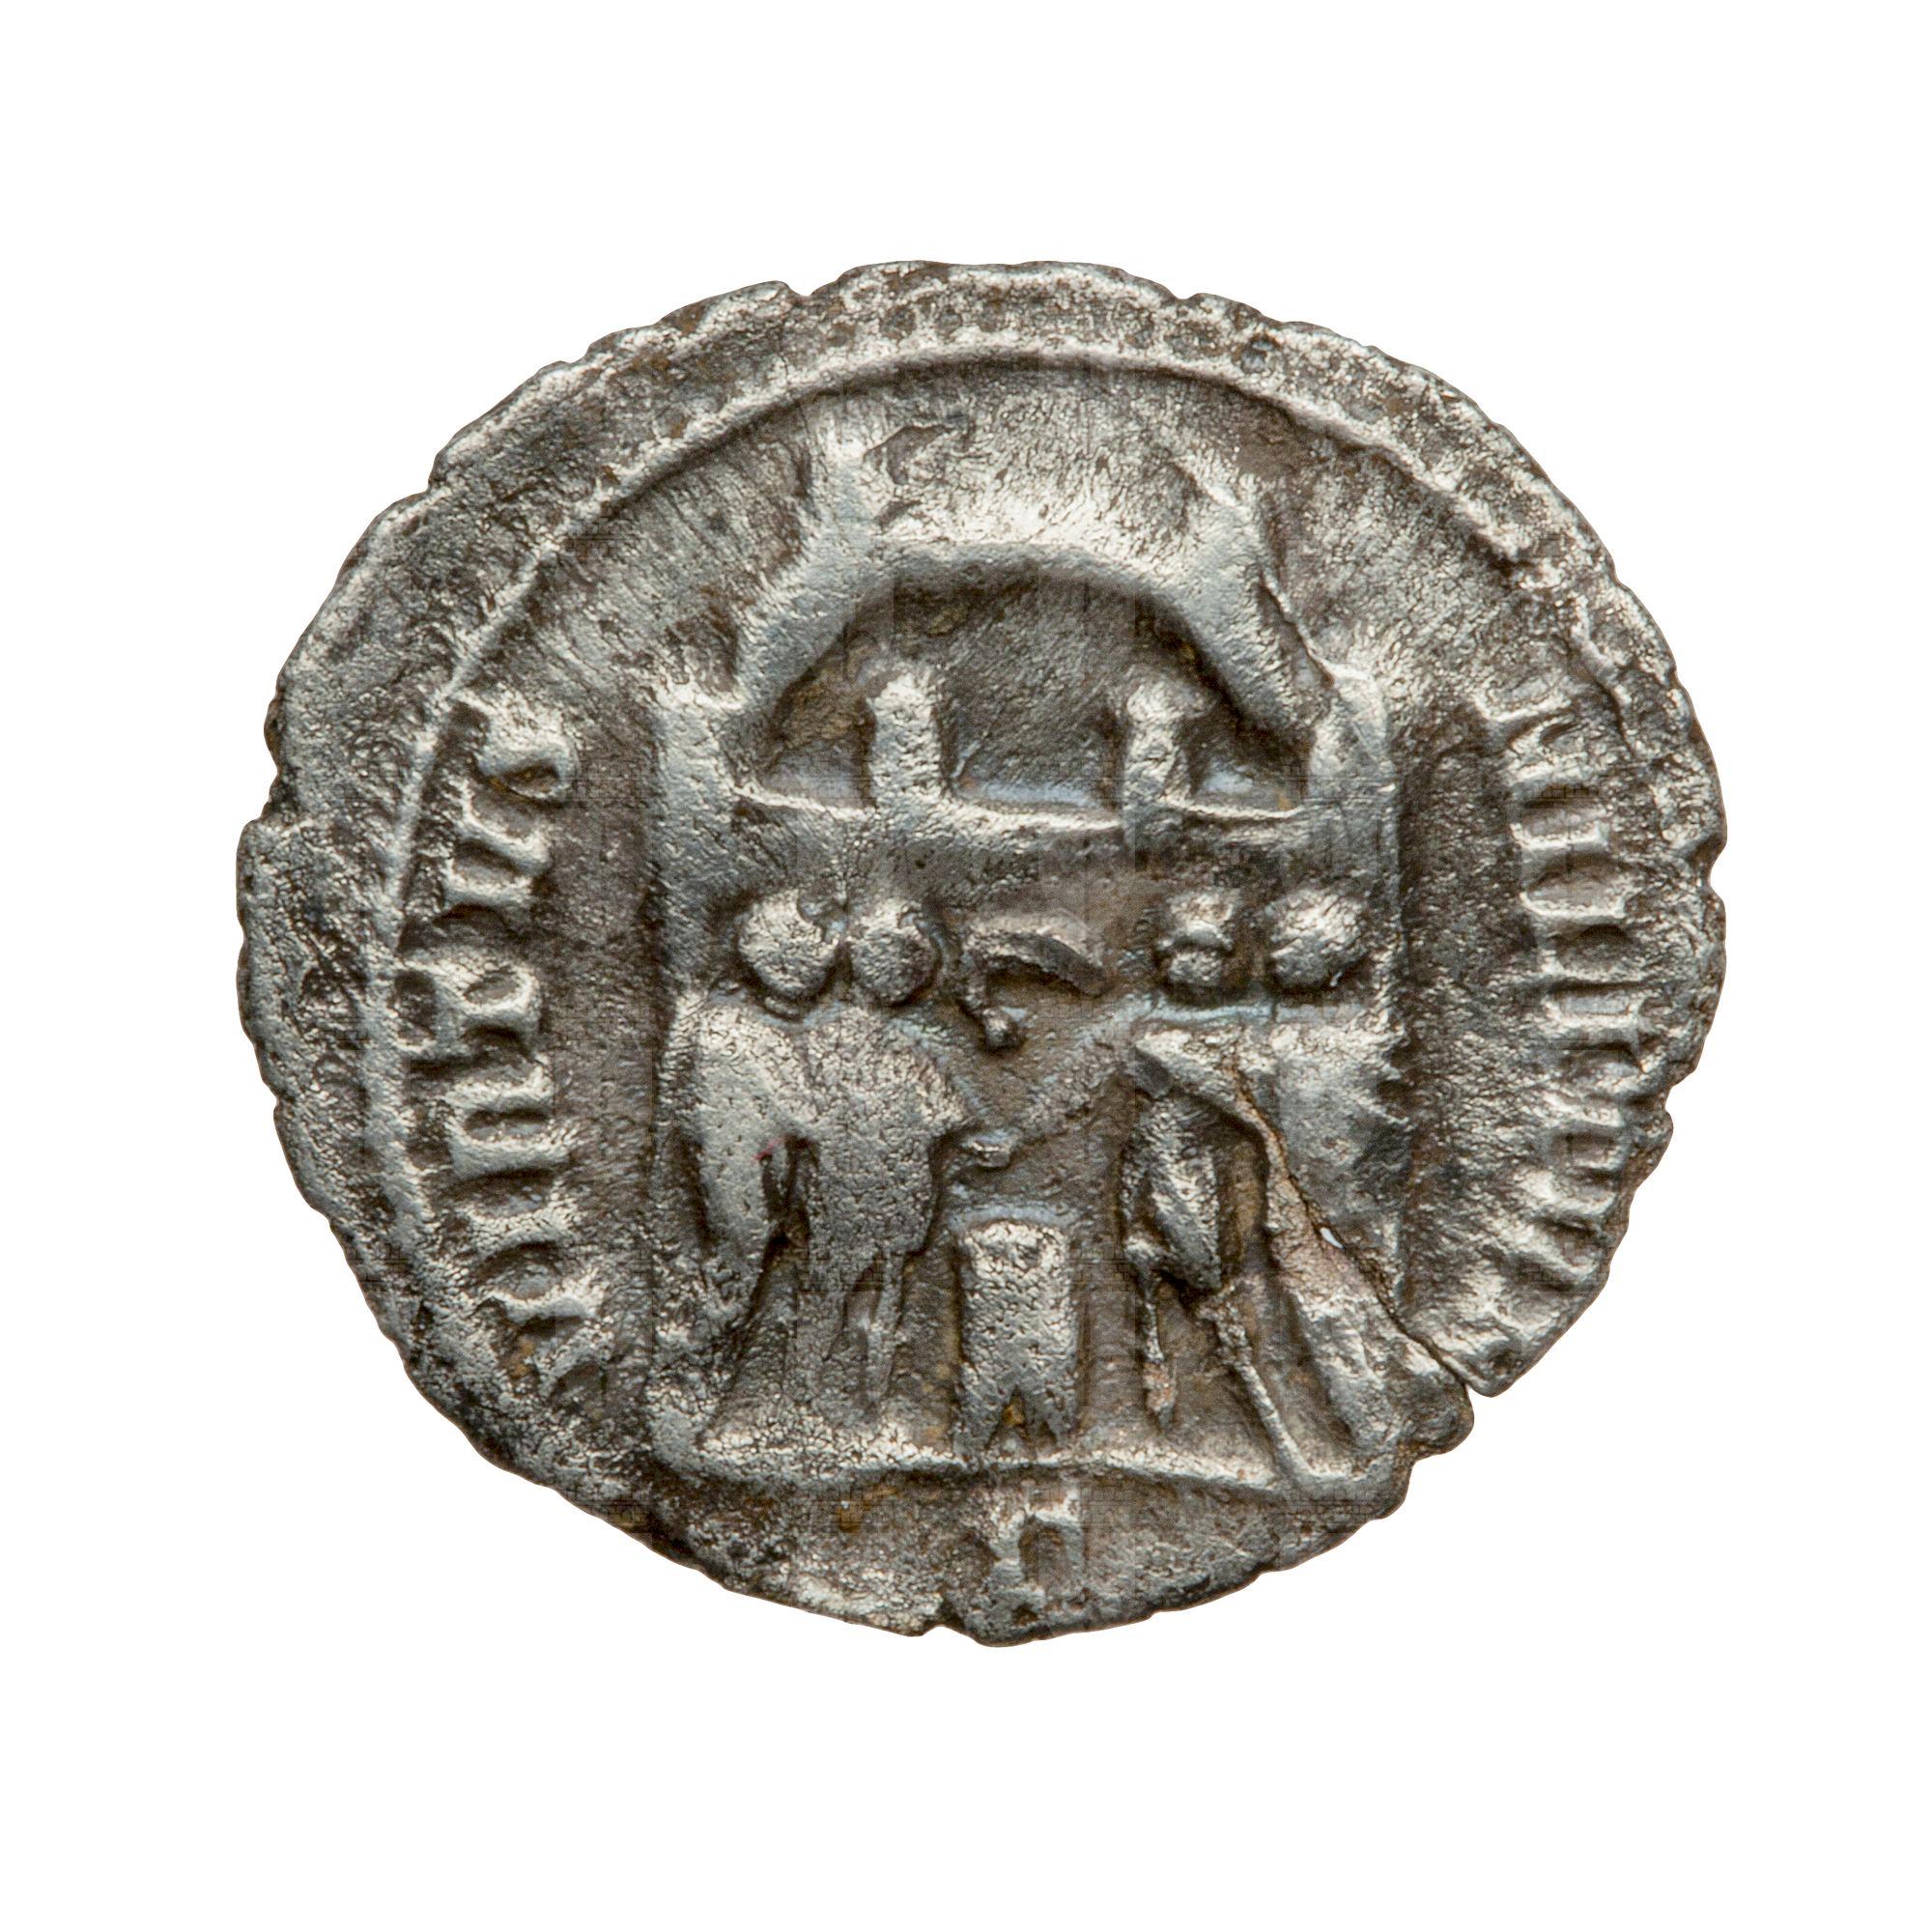 https://catalogomusei.comune.trieste.it/samira/resource/image/reperti-archeologici/Roma 2371 bis  R Diocleziano.jpg?token=65150f2dd32e8